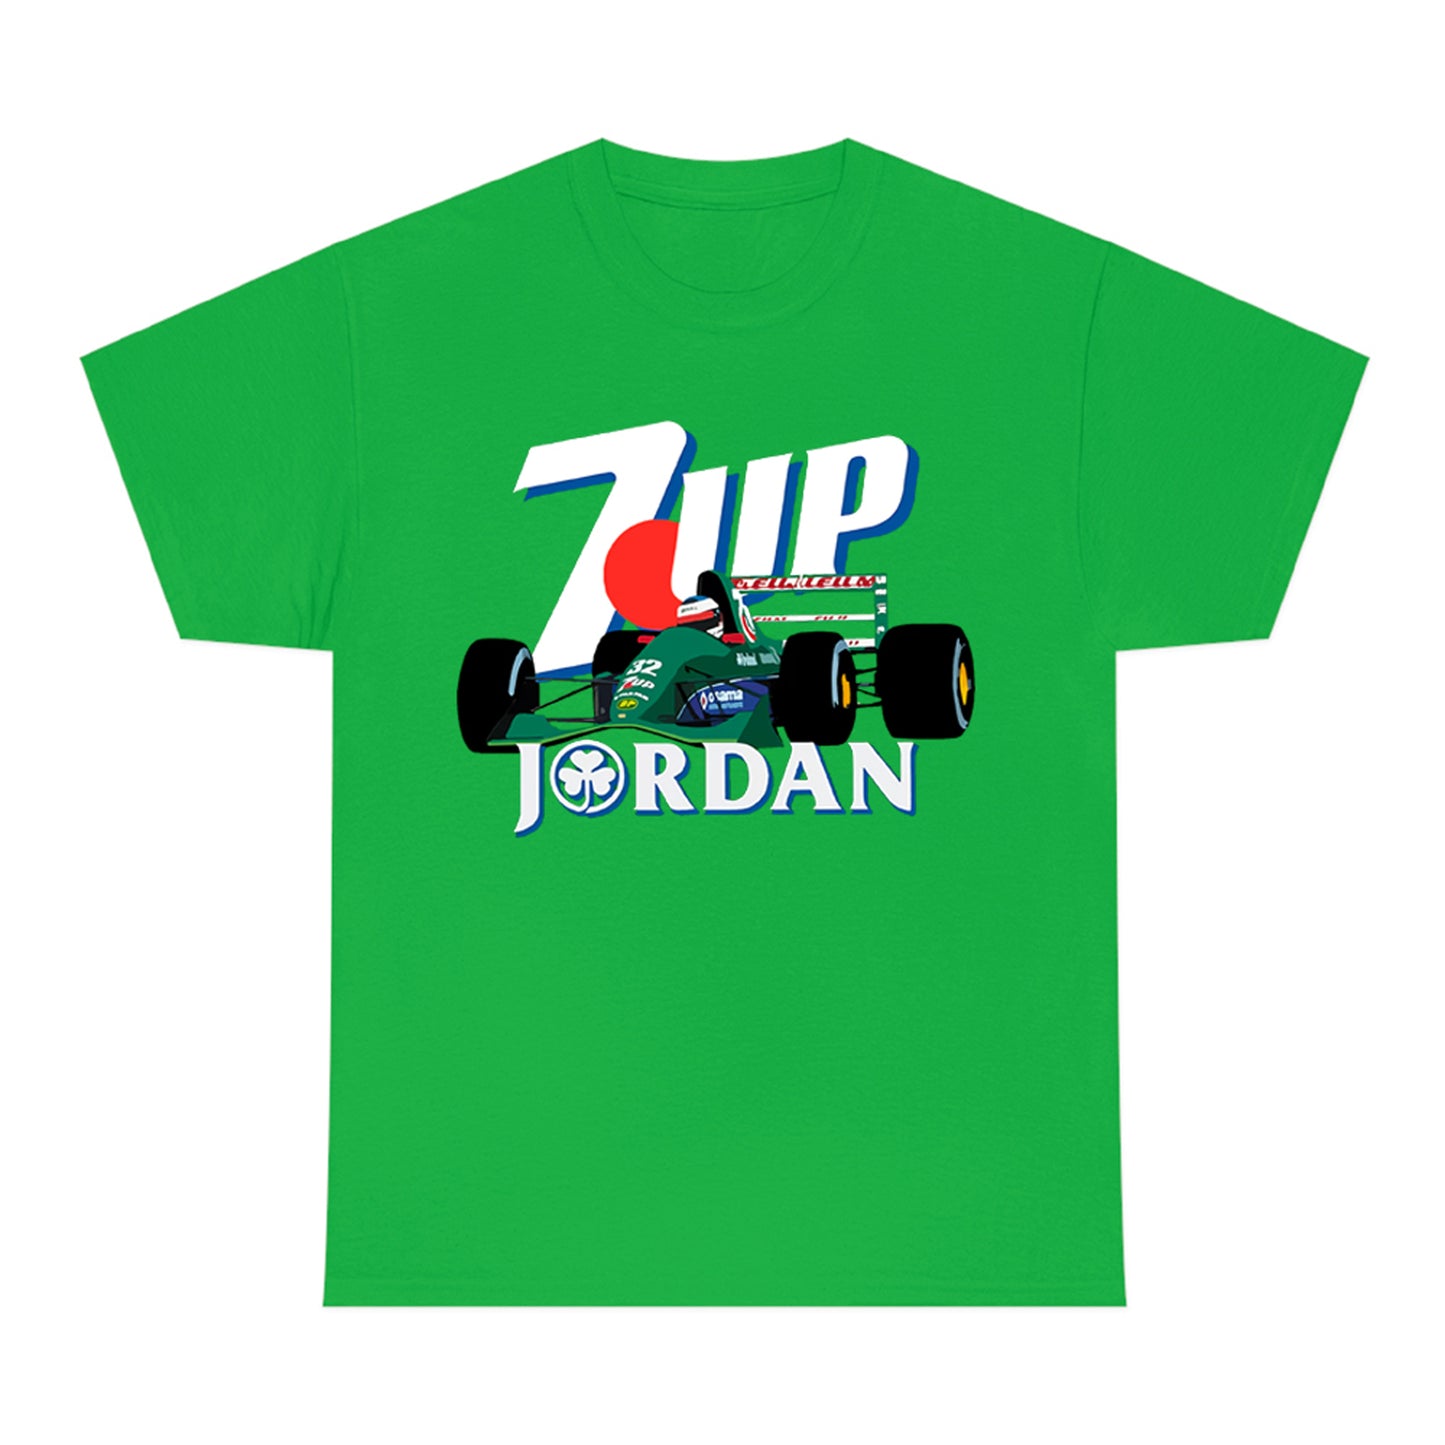 7up Jordan Racing Team Logo Yellow Green T-Shirt Size S to 3XL